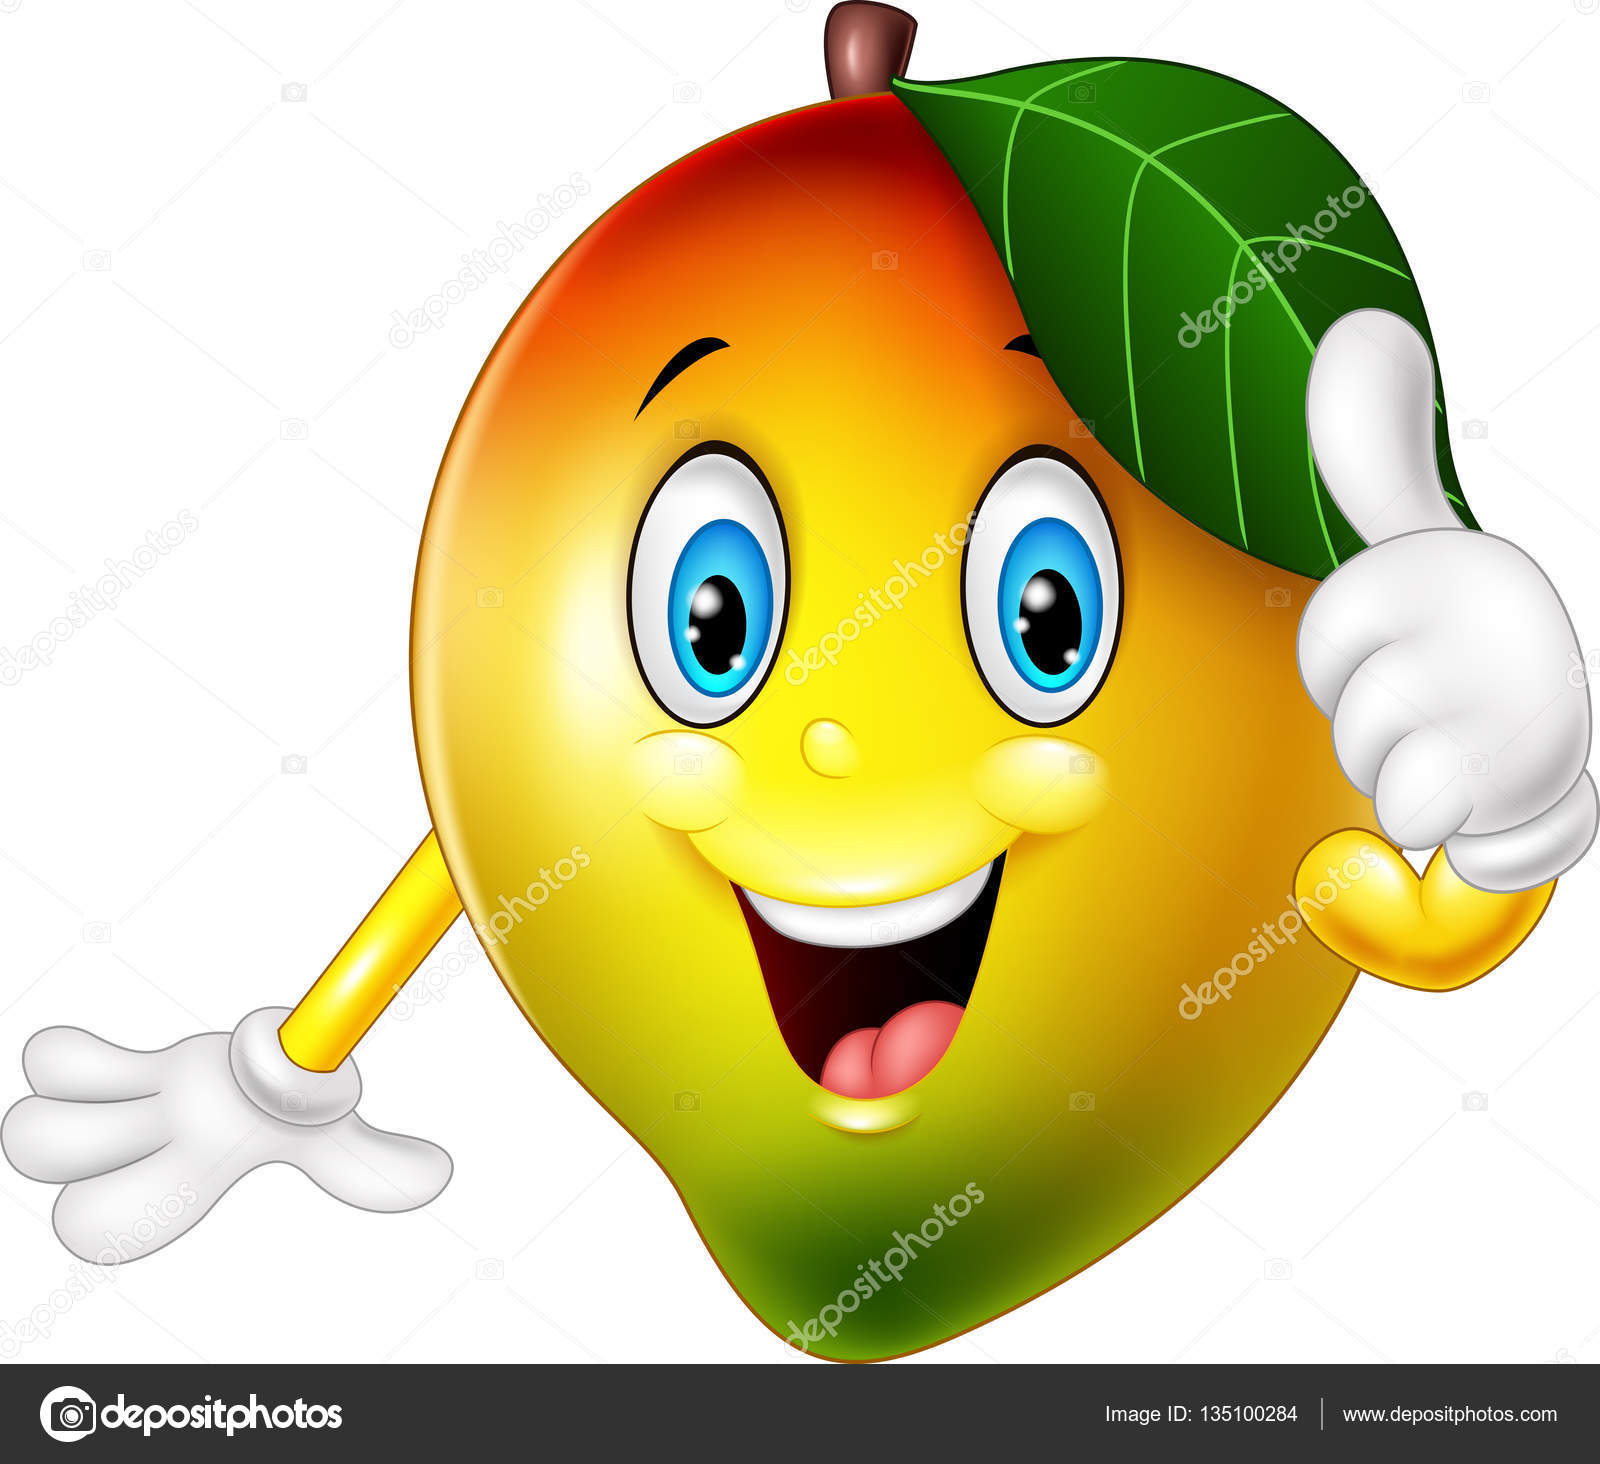 Sintético 98+ Imagen De Fondo Imagenes De Frutas Animadas Mango Actualizar